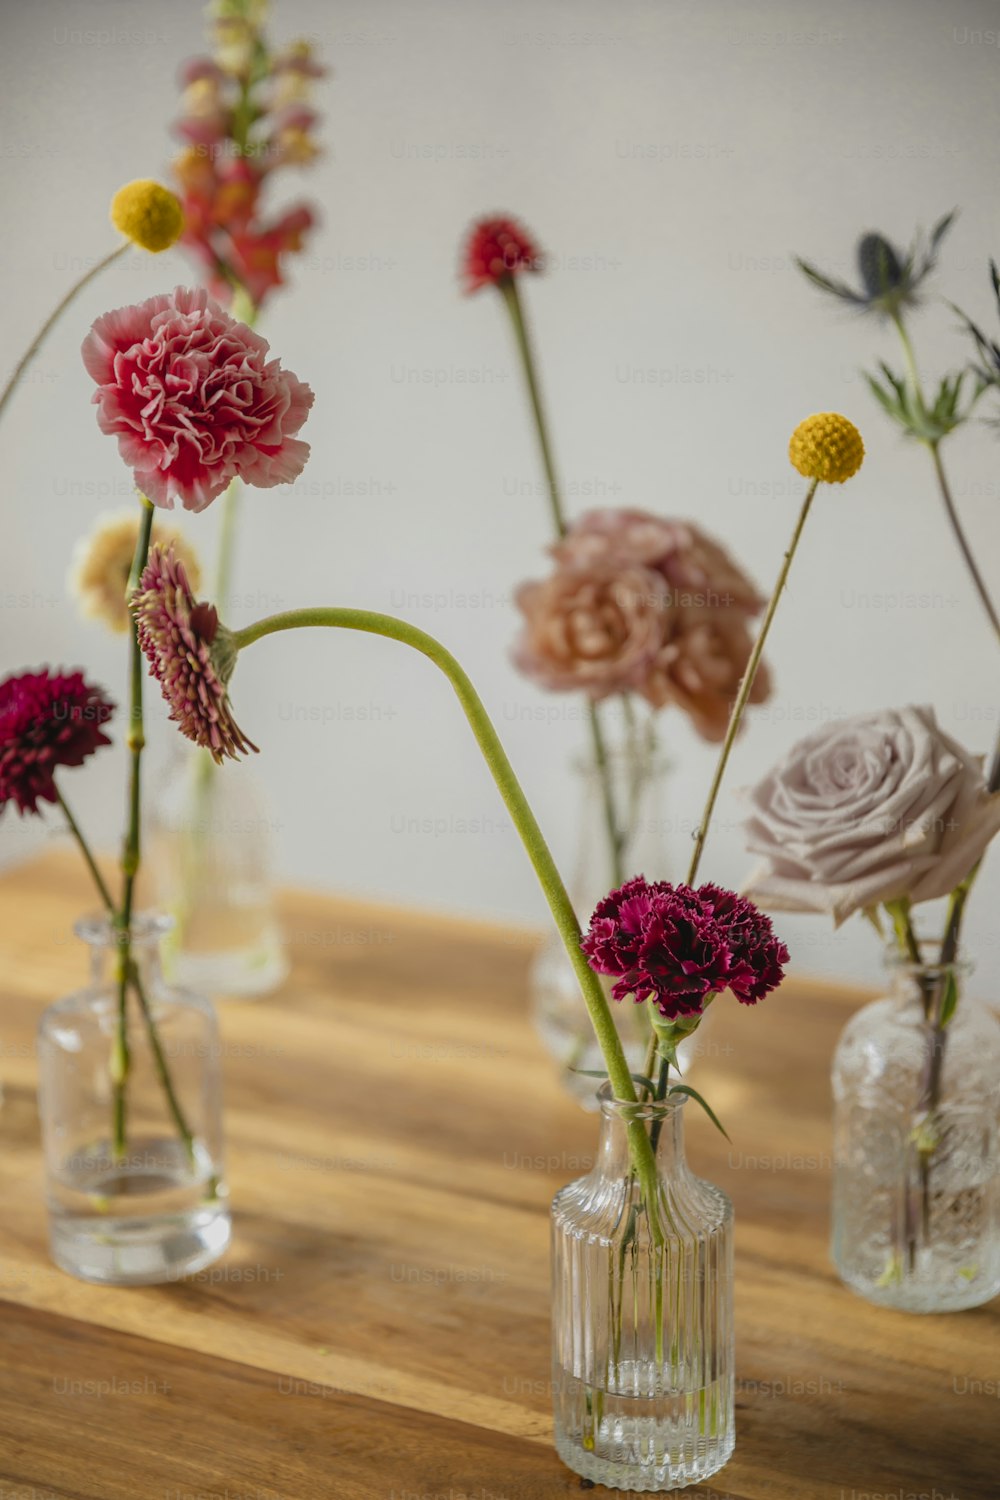 une table en bois surmontée de vases remplis de fleurs